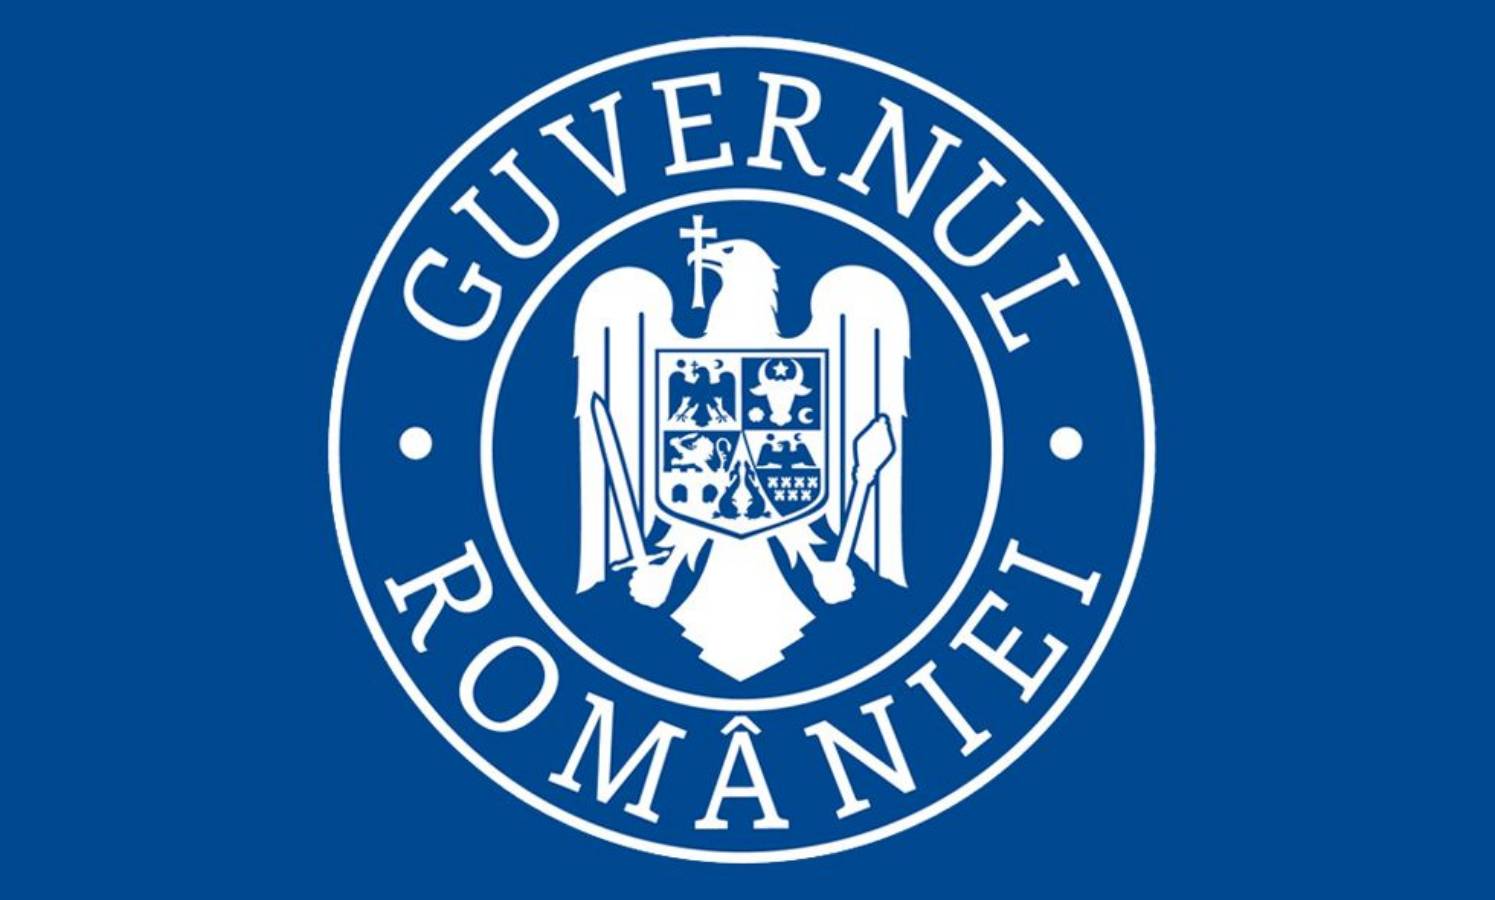 Stufe-2-Coronavirus-Impfung der rumänischen Regierung